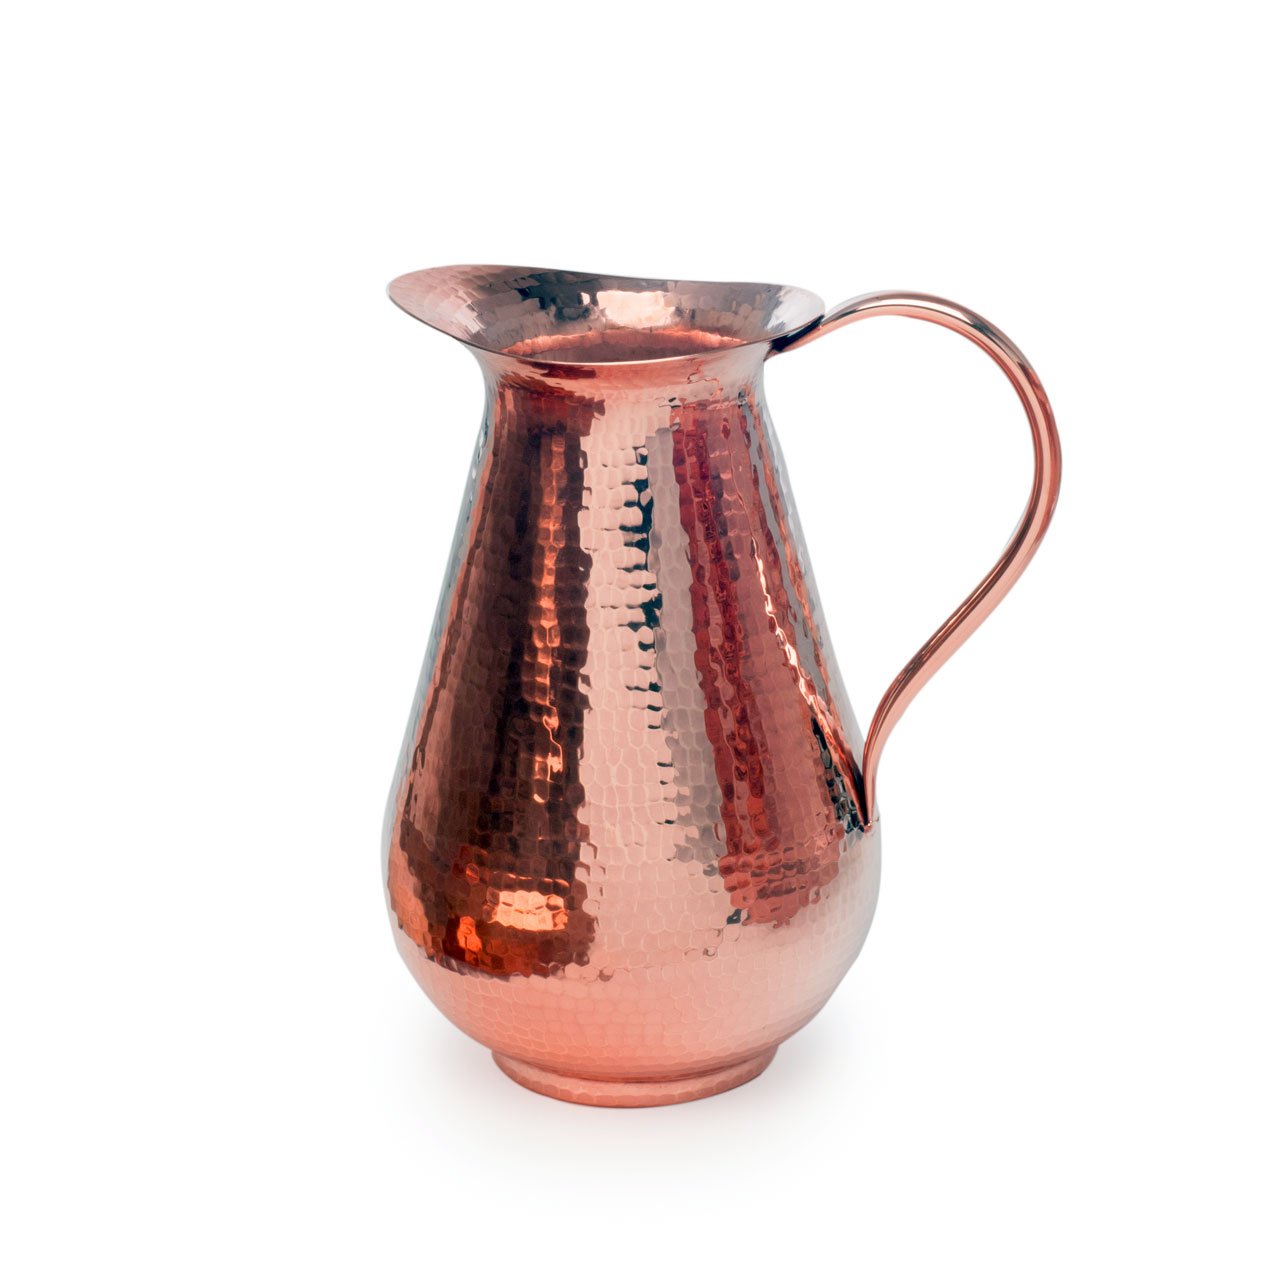 Sertodo Arcadia Beverage Urn, 13 Quart Capacity, Hammered Copper